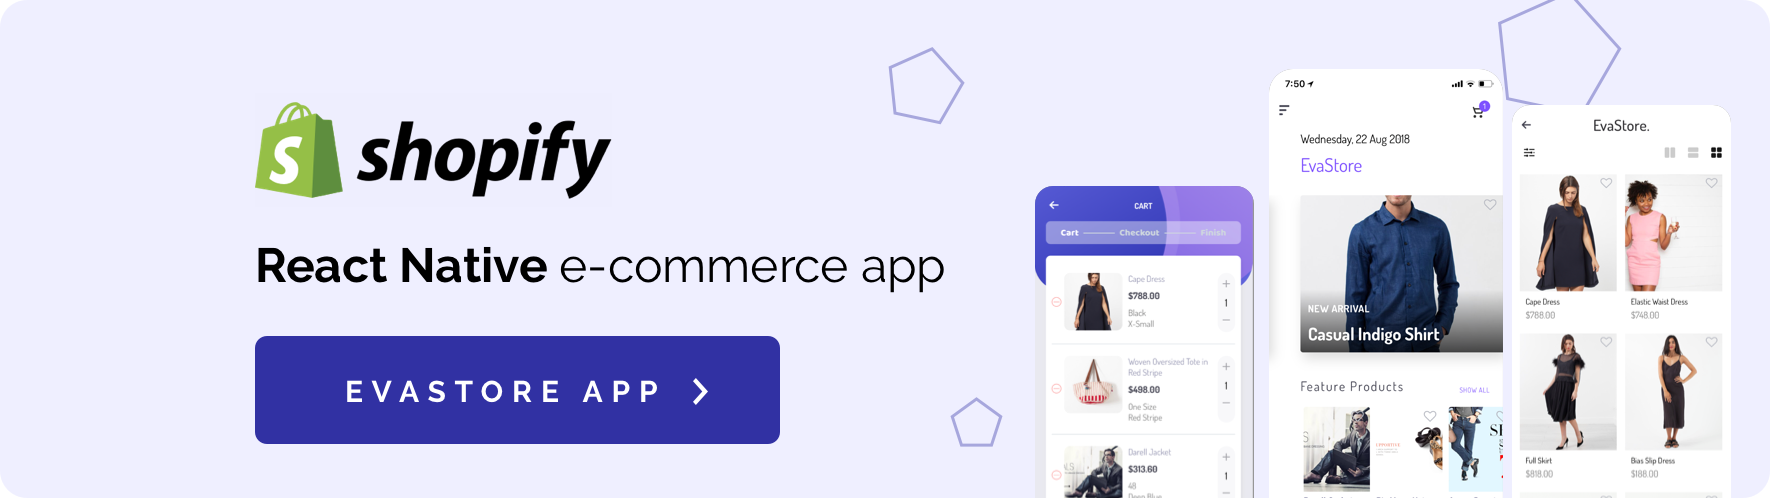 Fluxstore WooCommerce - Flutter E-commerce Full App - 37